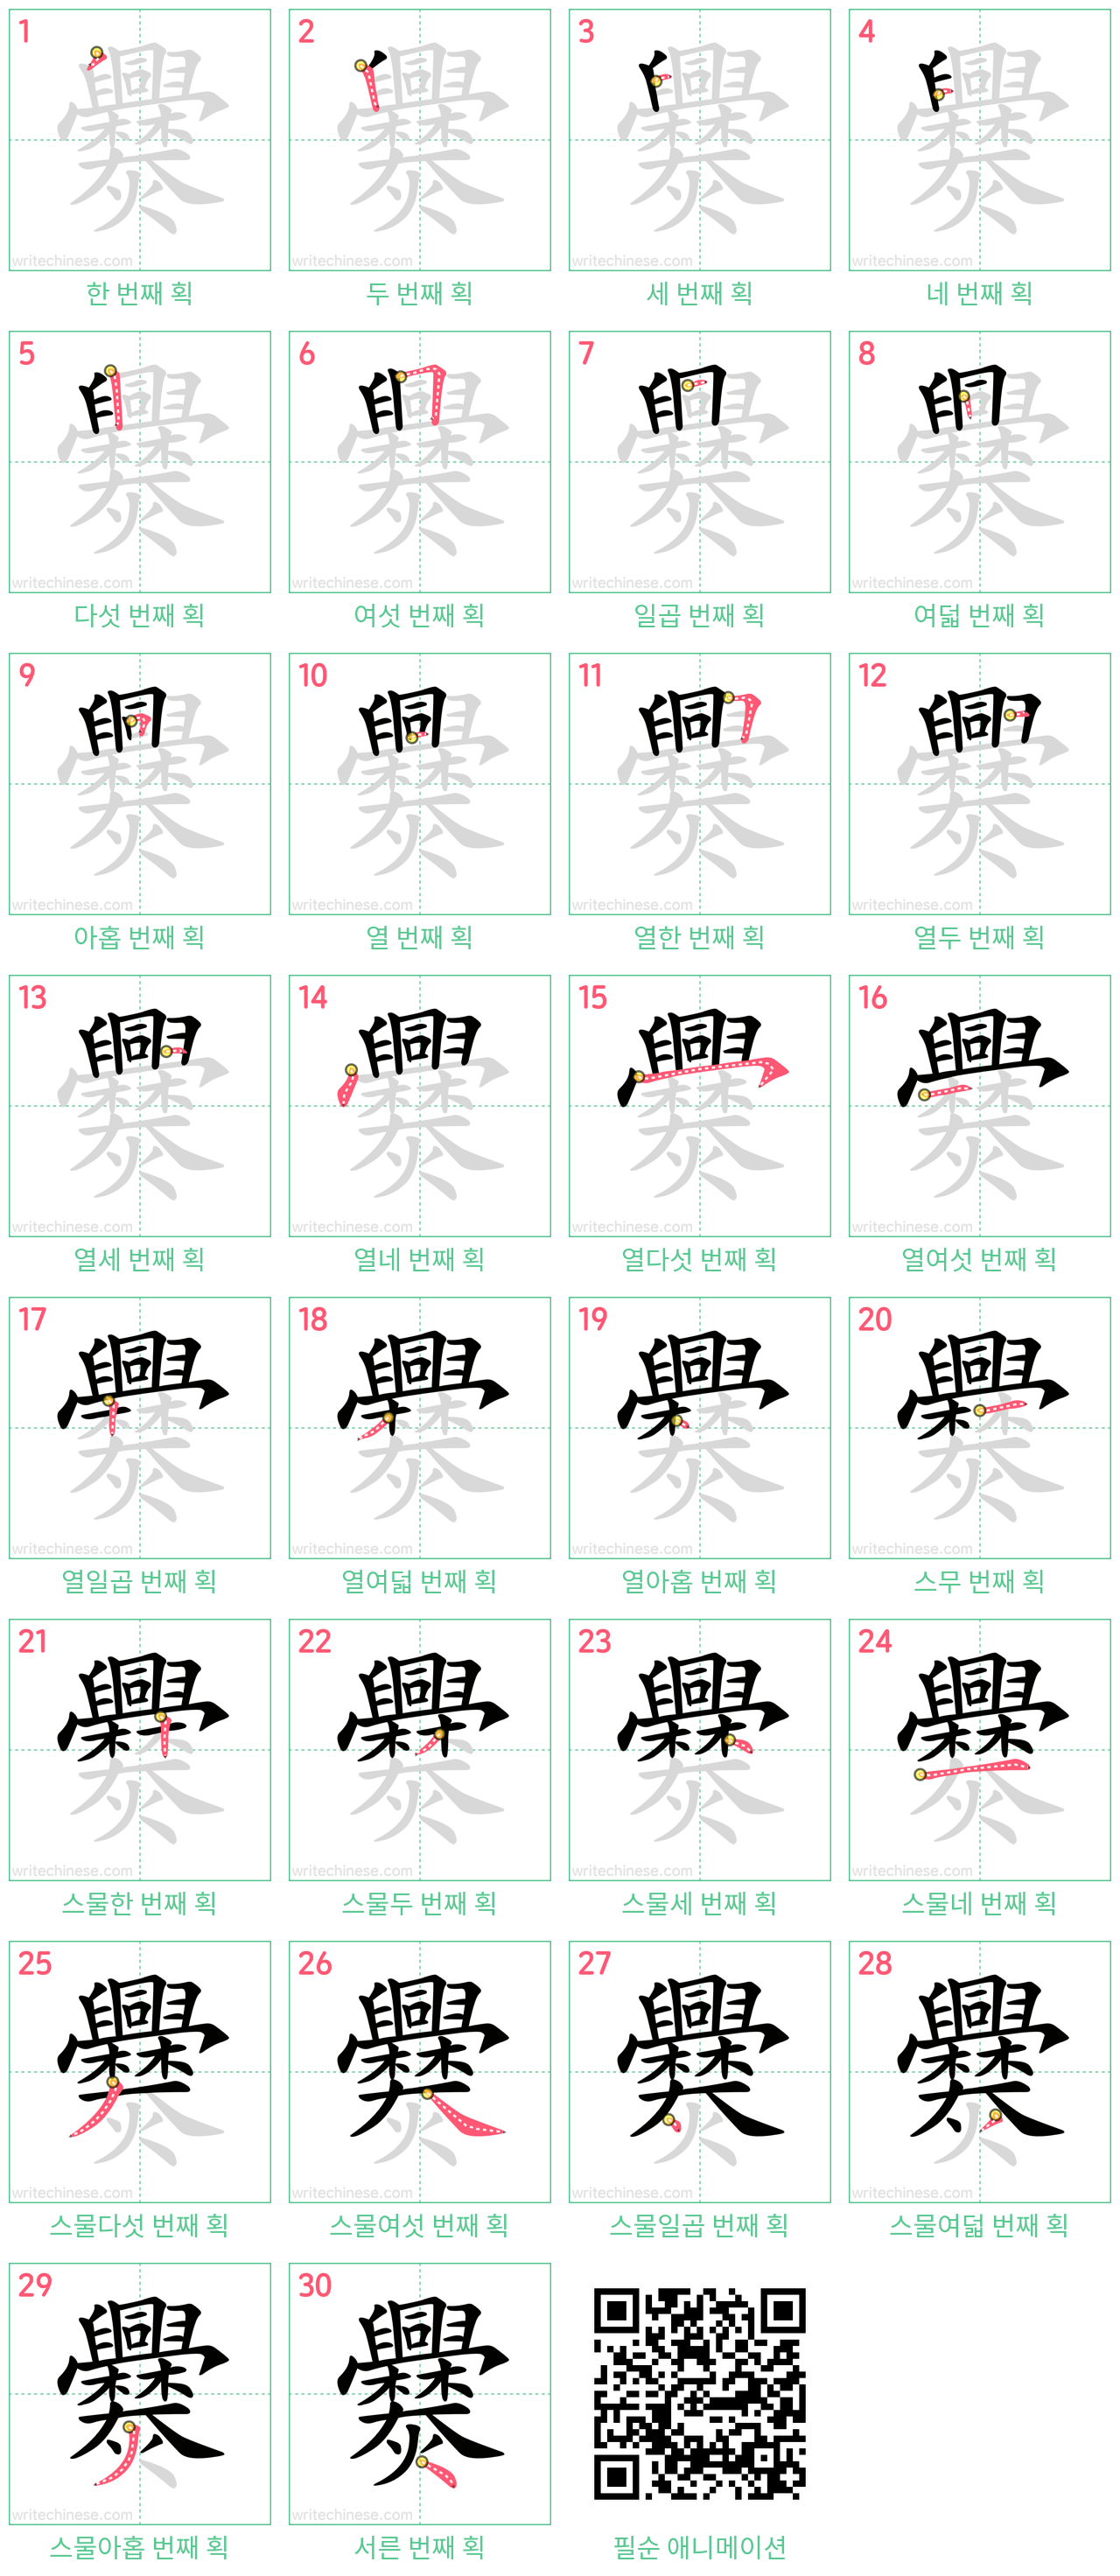 爨 step-by-step stroke order diagrams